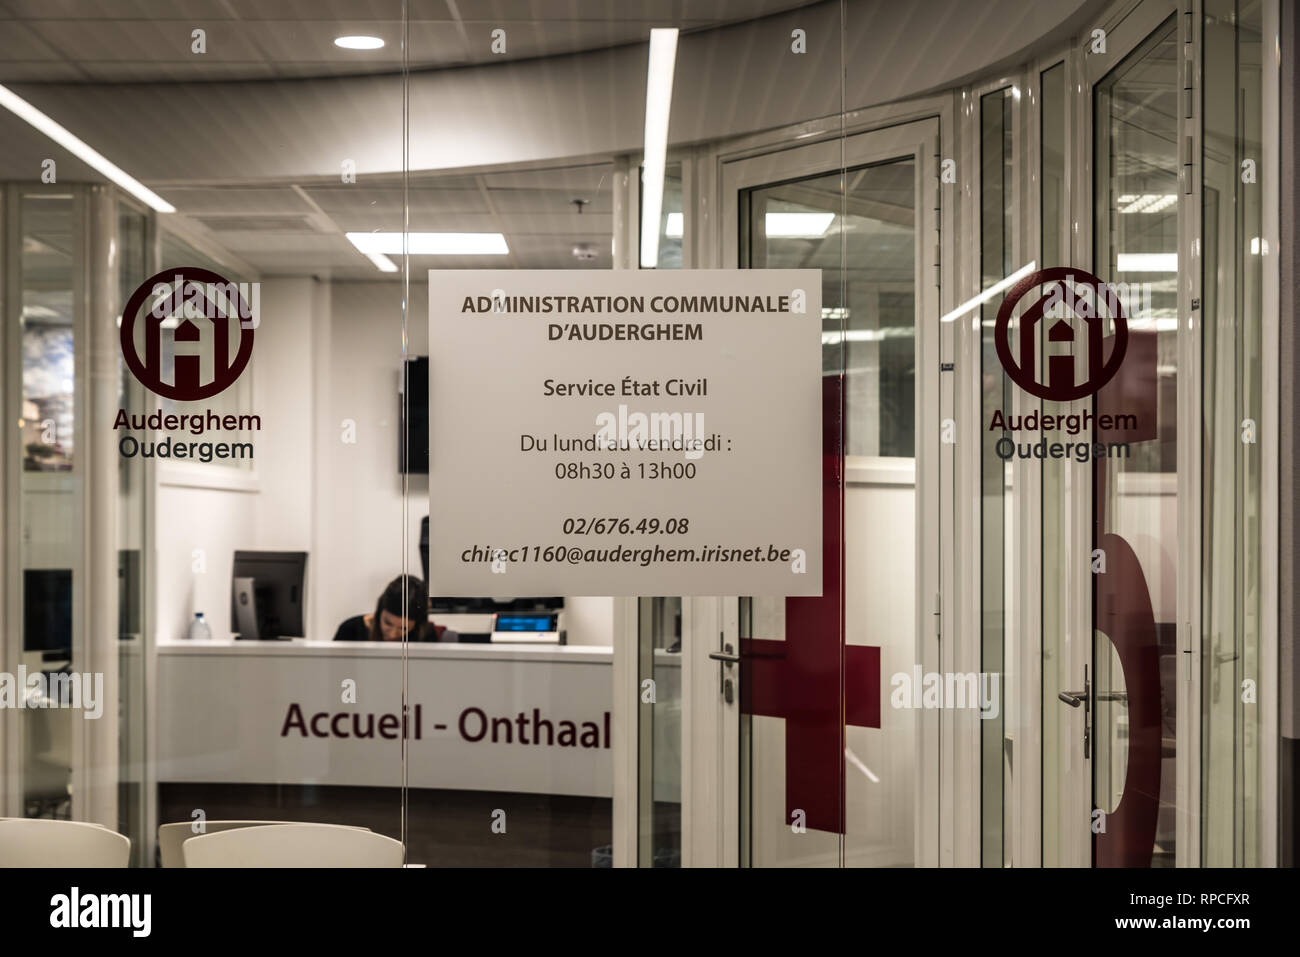 Auderghem, Bruxelles / Belgio - 02 18 2019: servizio civile centro del comune, fornendo certificati di nascita all'ospedale CHIREC Foto Stock